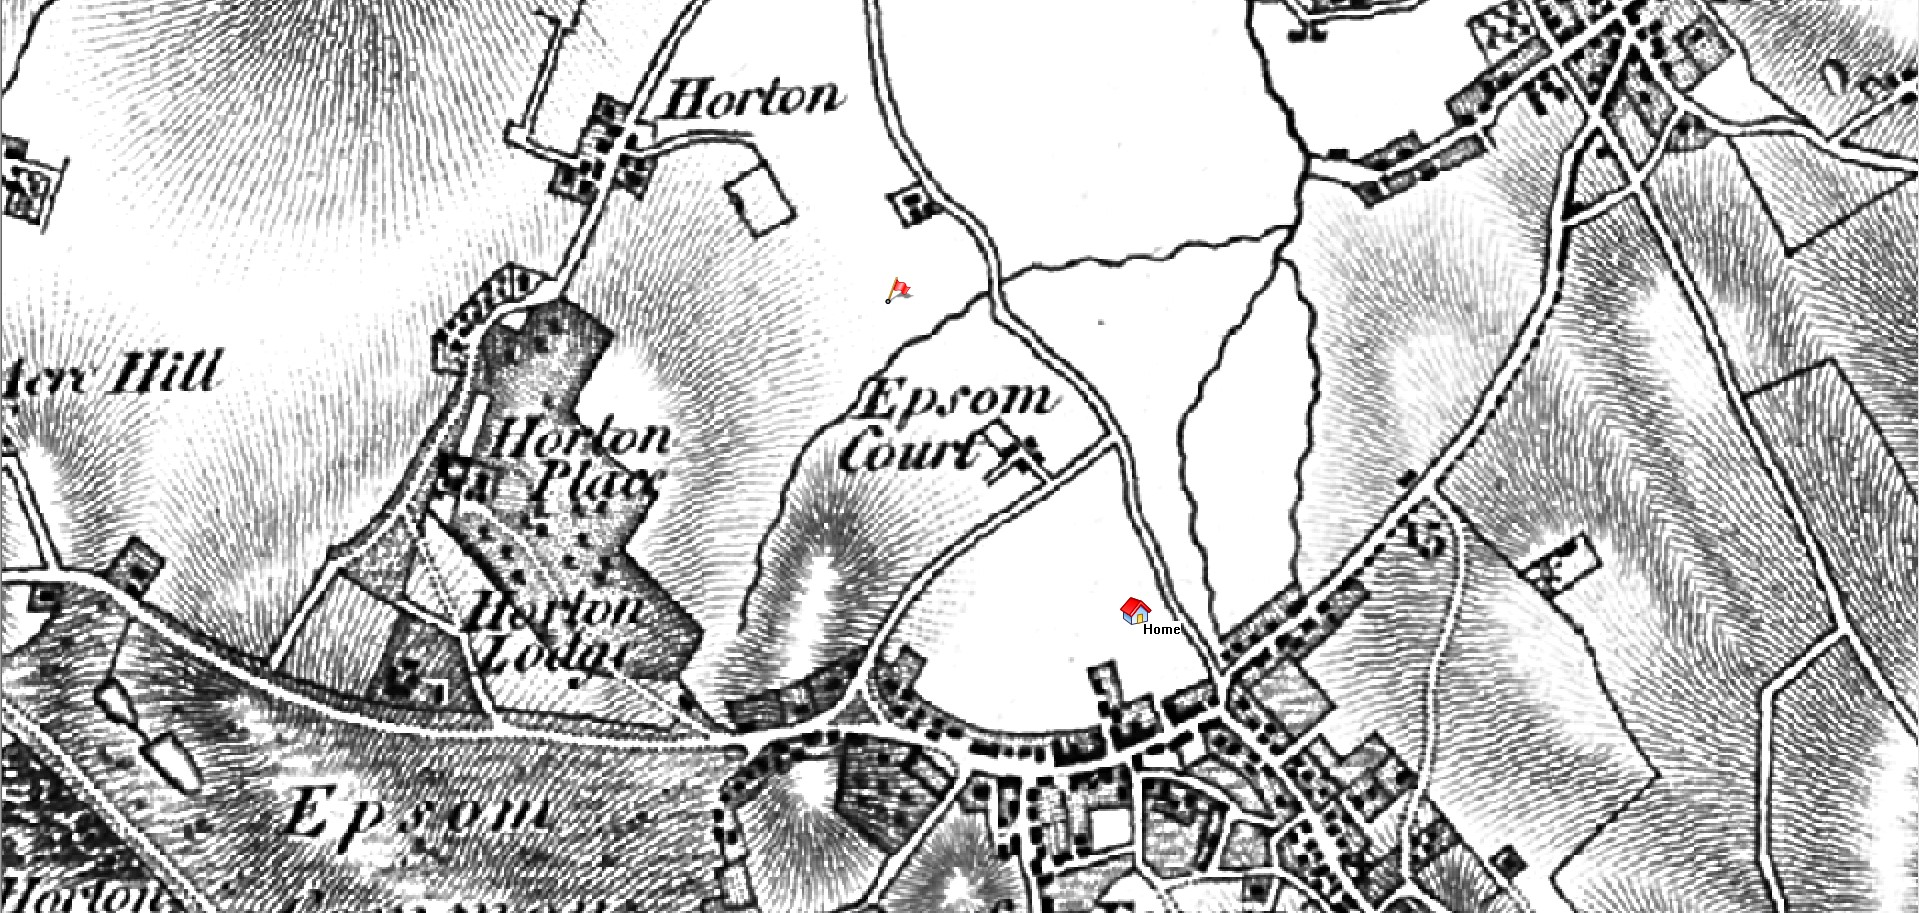 Map 1800s Epsom Court